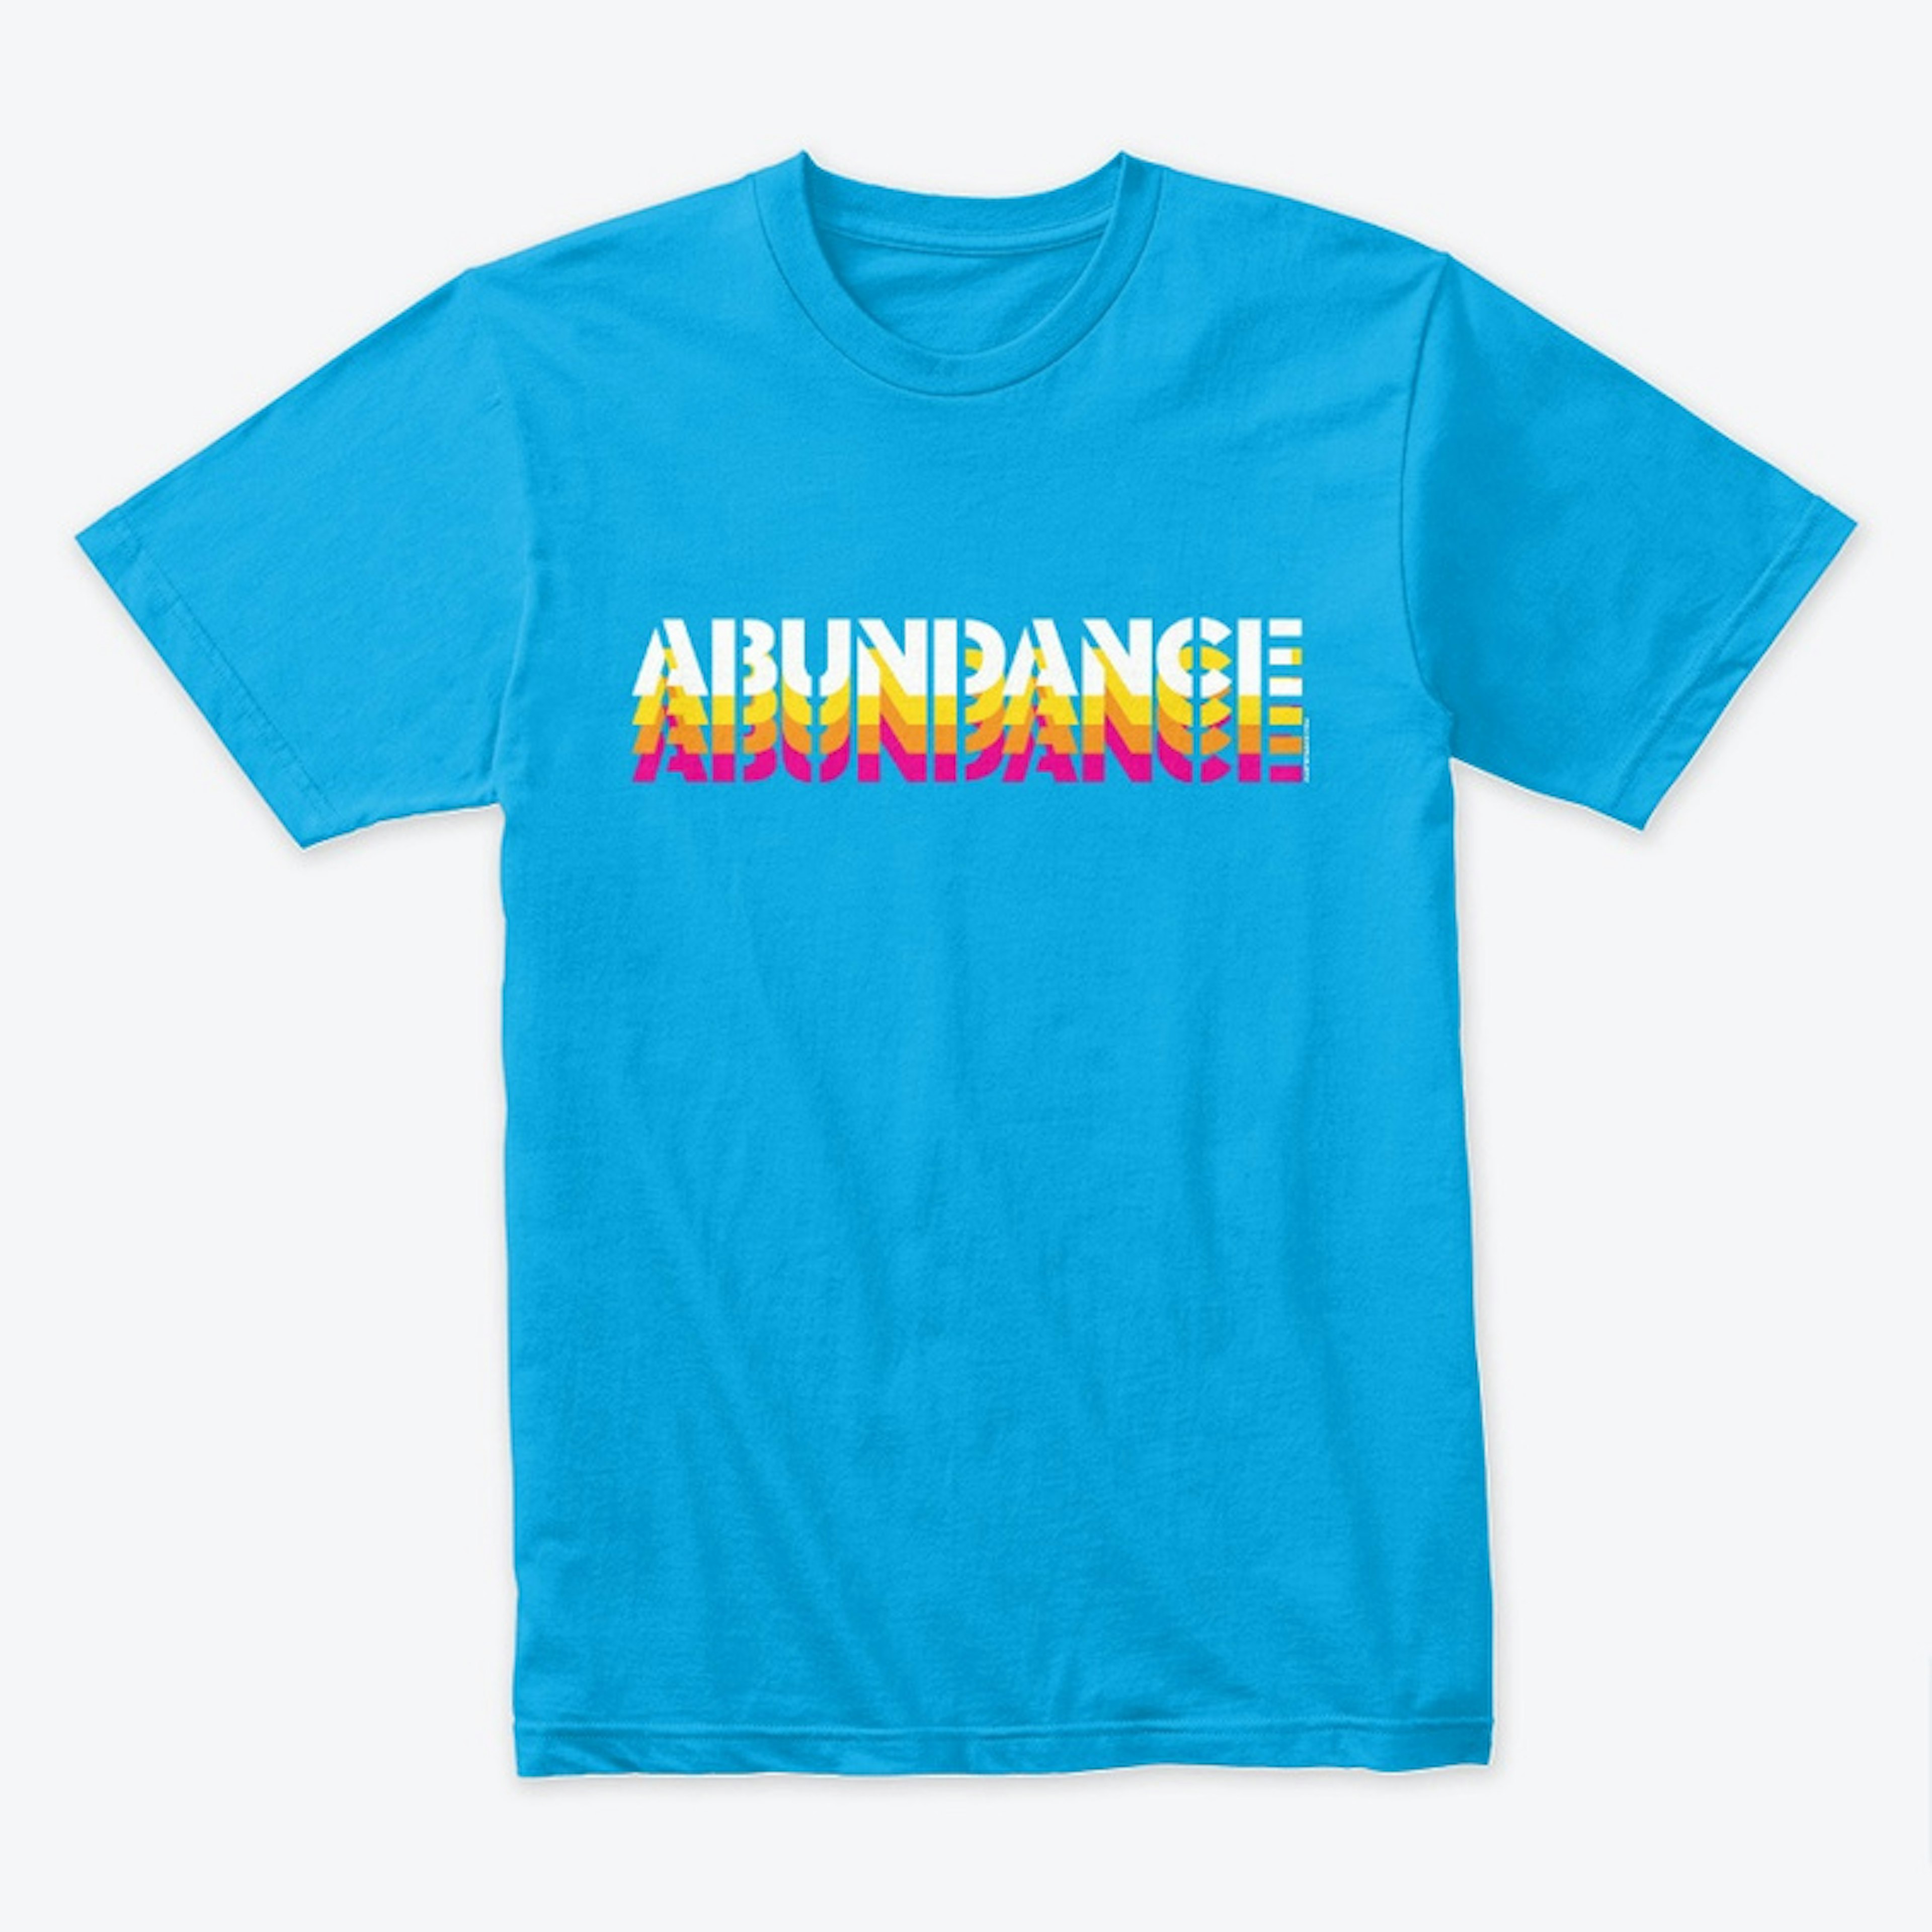 ABUNDANCE!! by artbymags